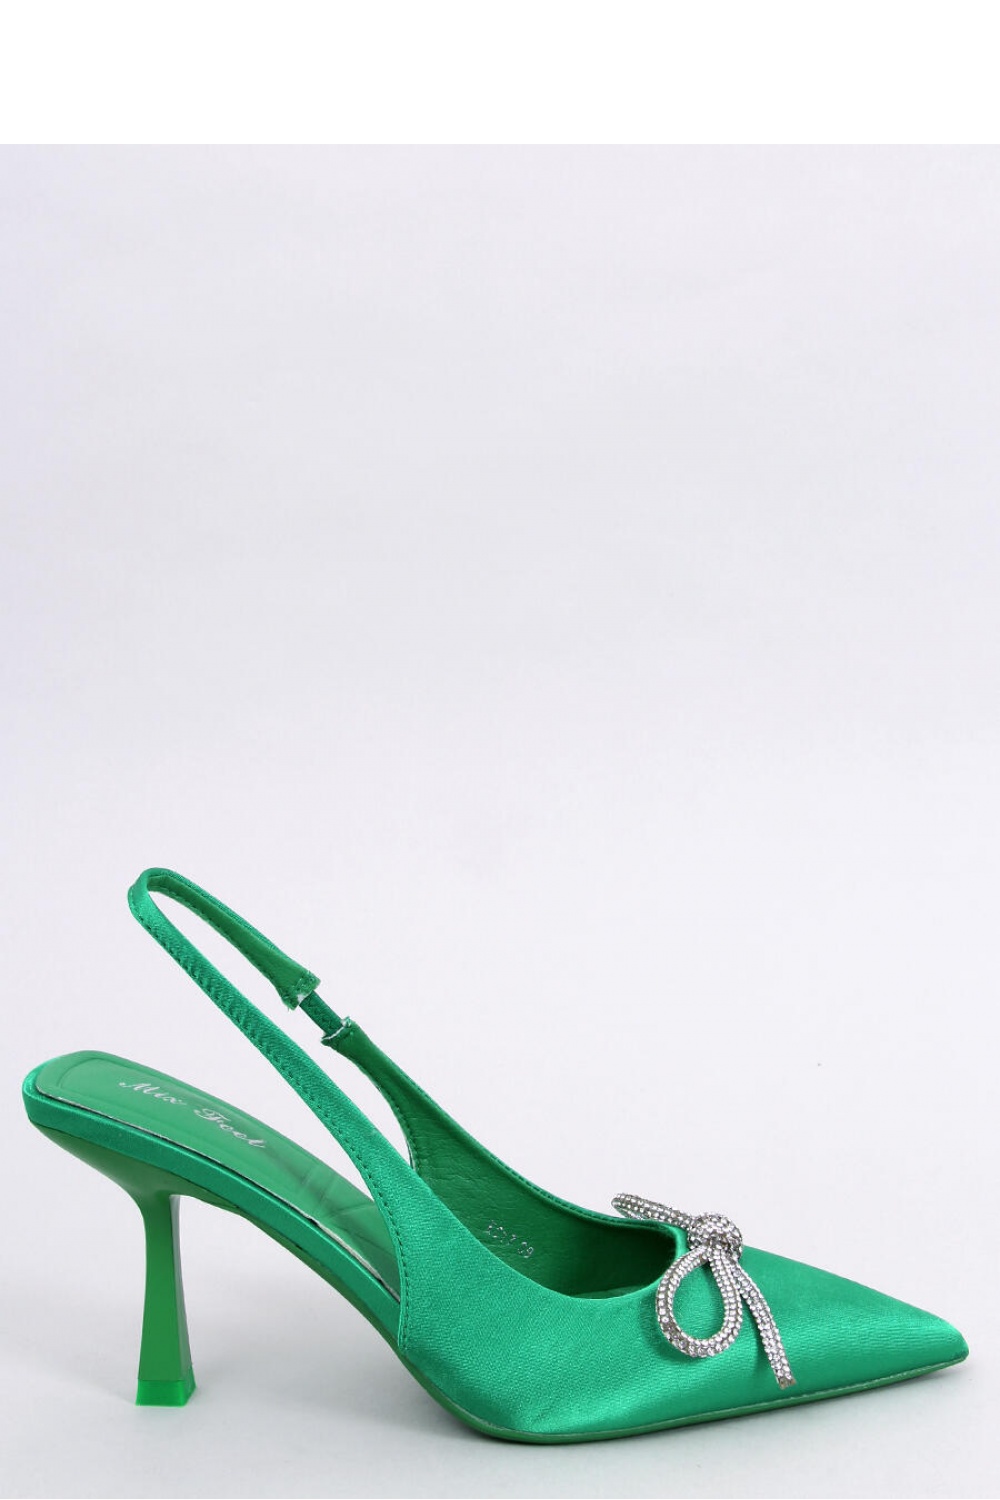 High heels model 179935 Inello